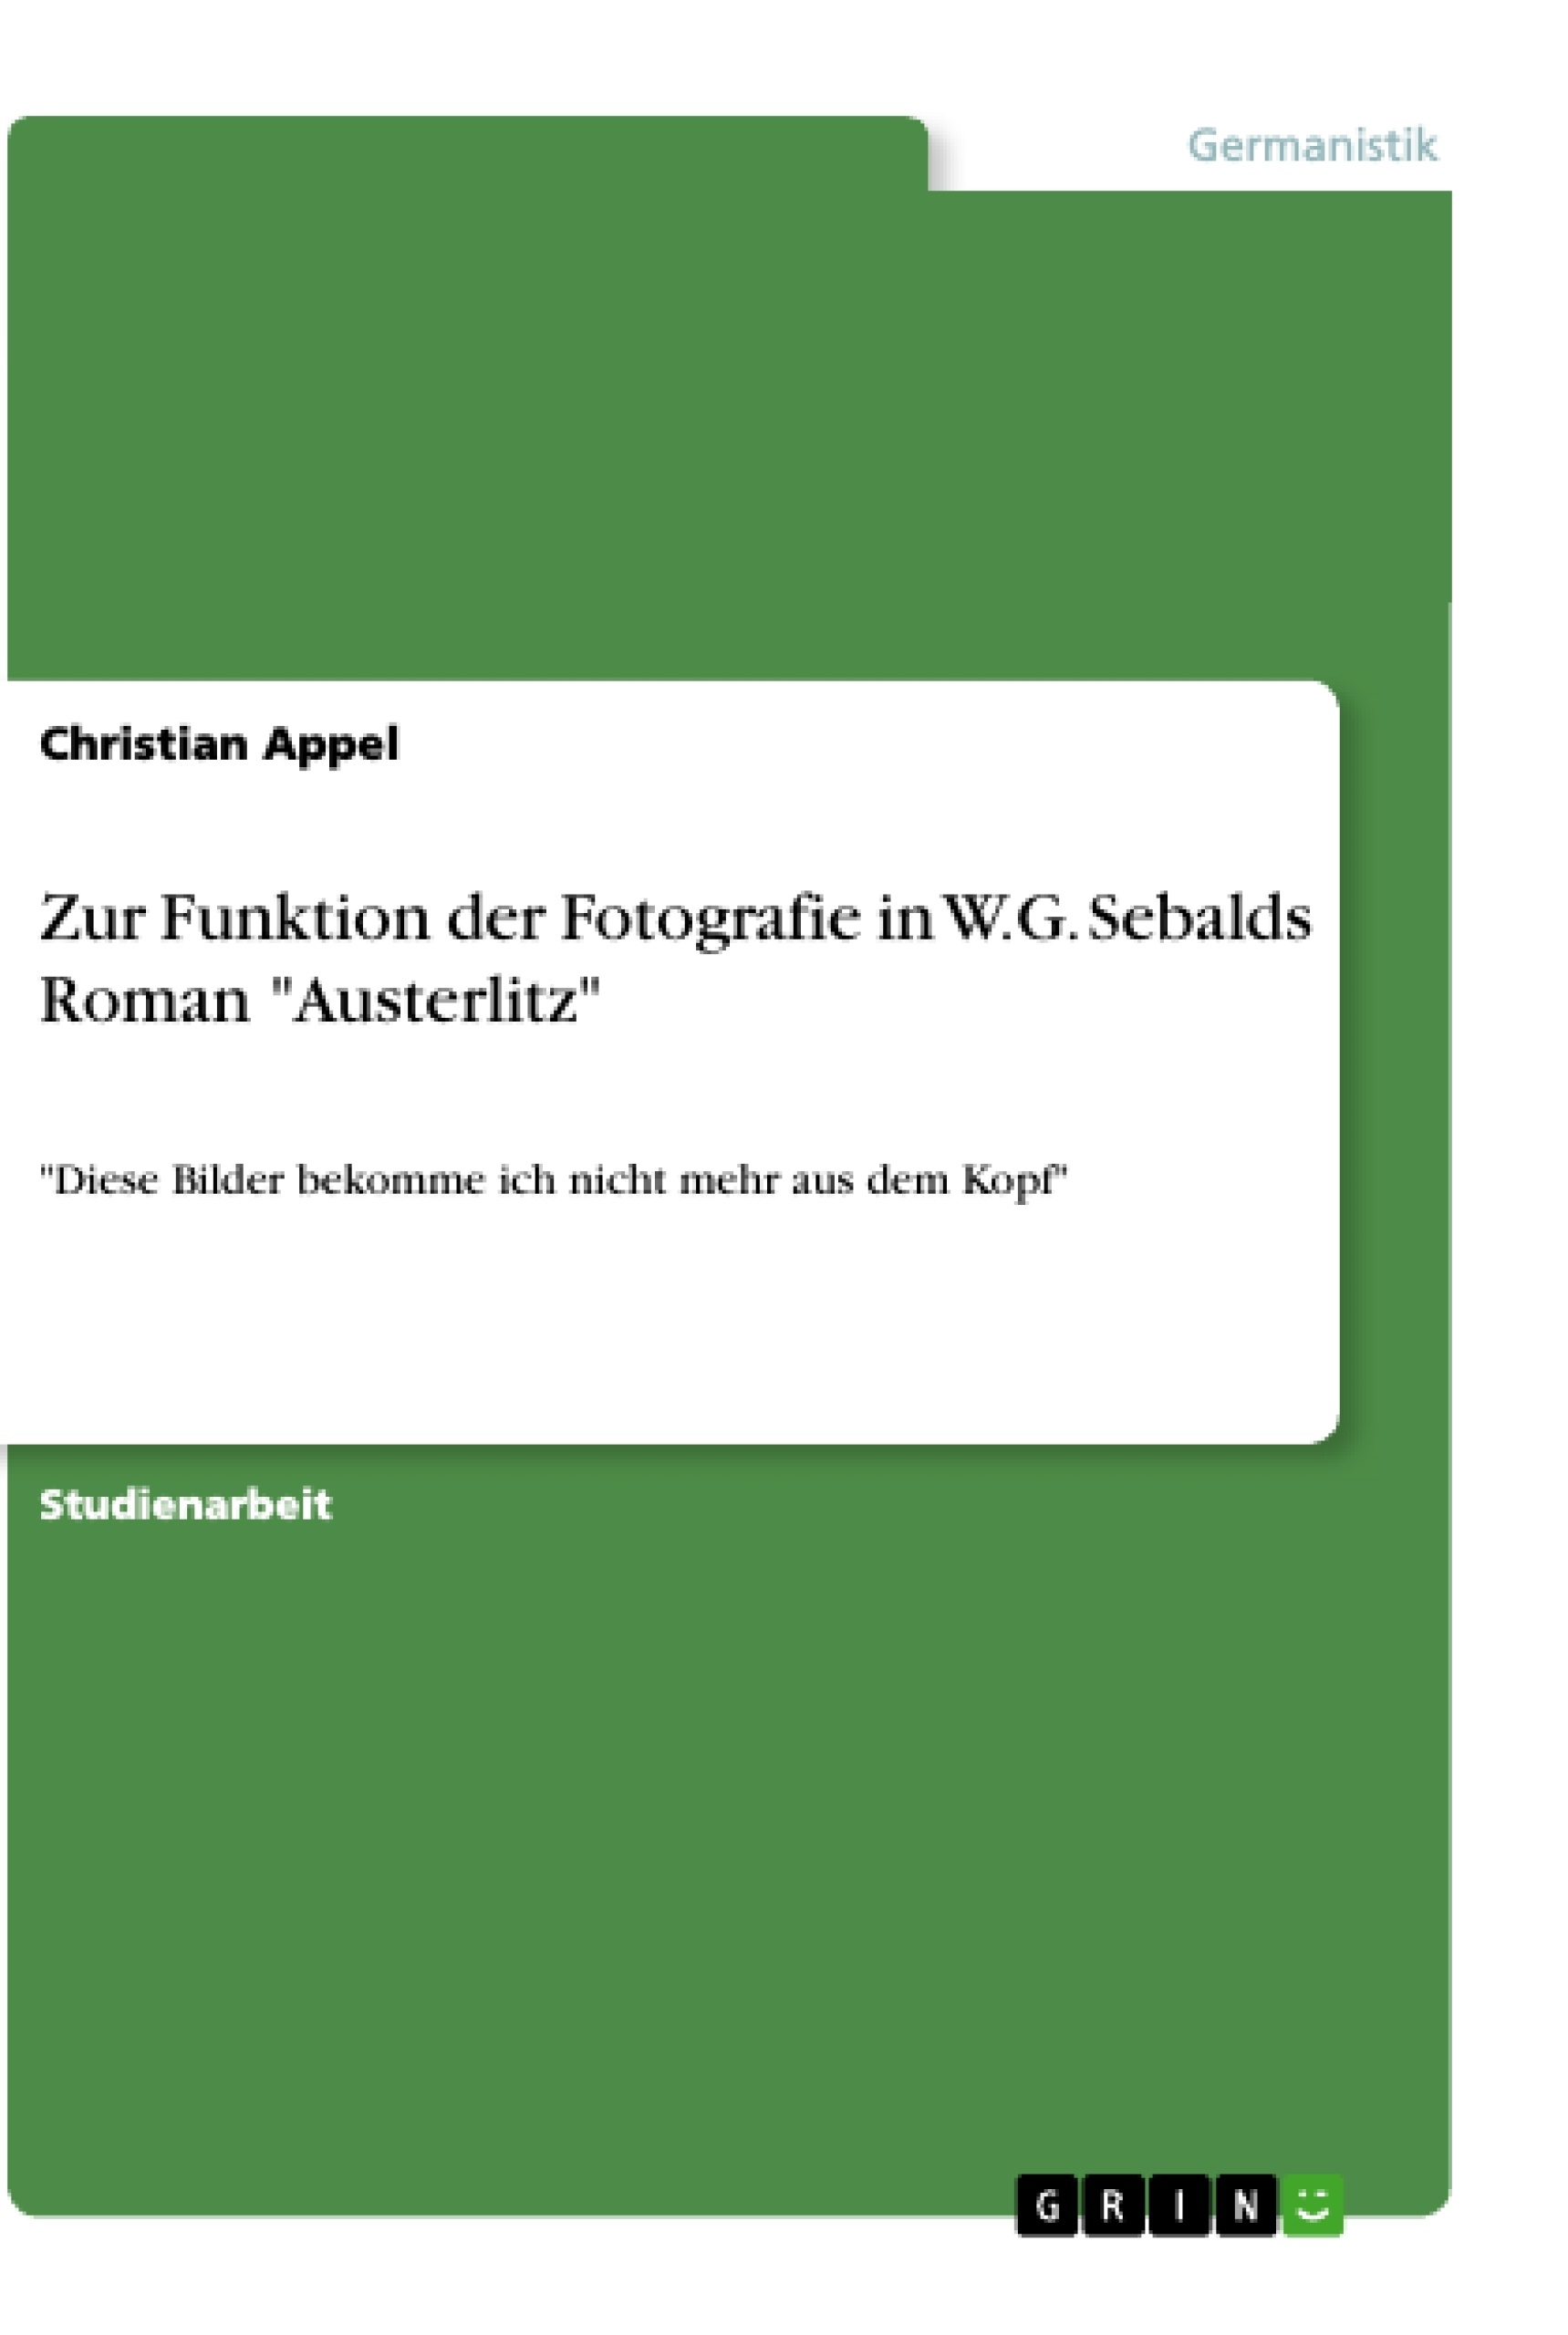 Título: Zur Funktion der Fotografie in W.G. Sebalds Roman "Austerlitz"